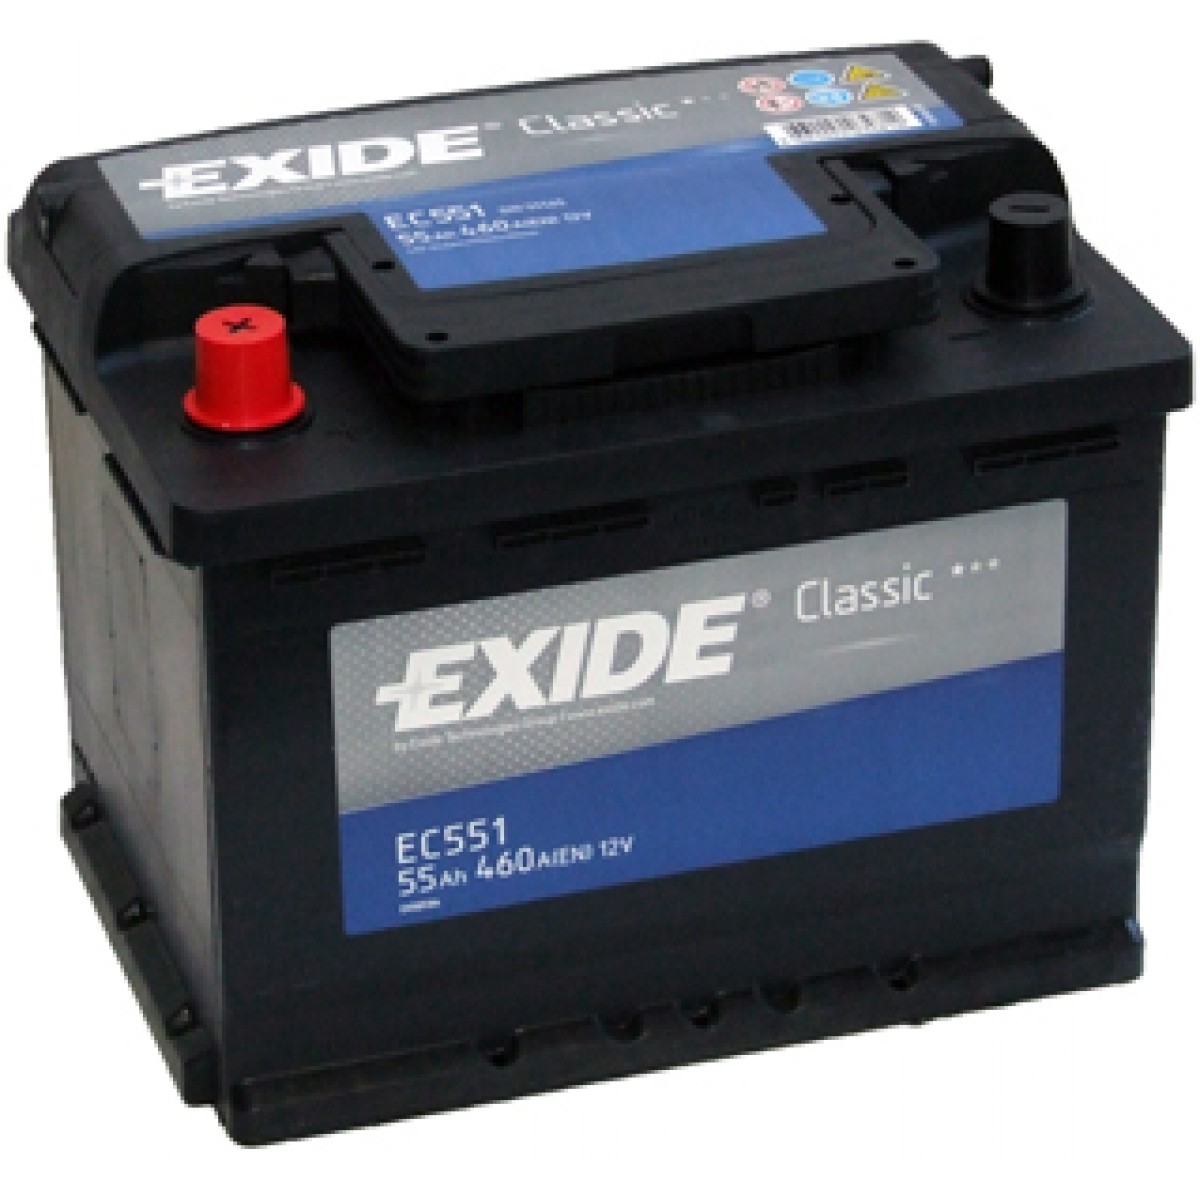 Exide EC551 Battery Exide Classic 12V 55AH 460A(EN) L+ EC551